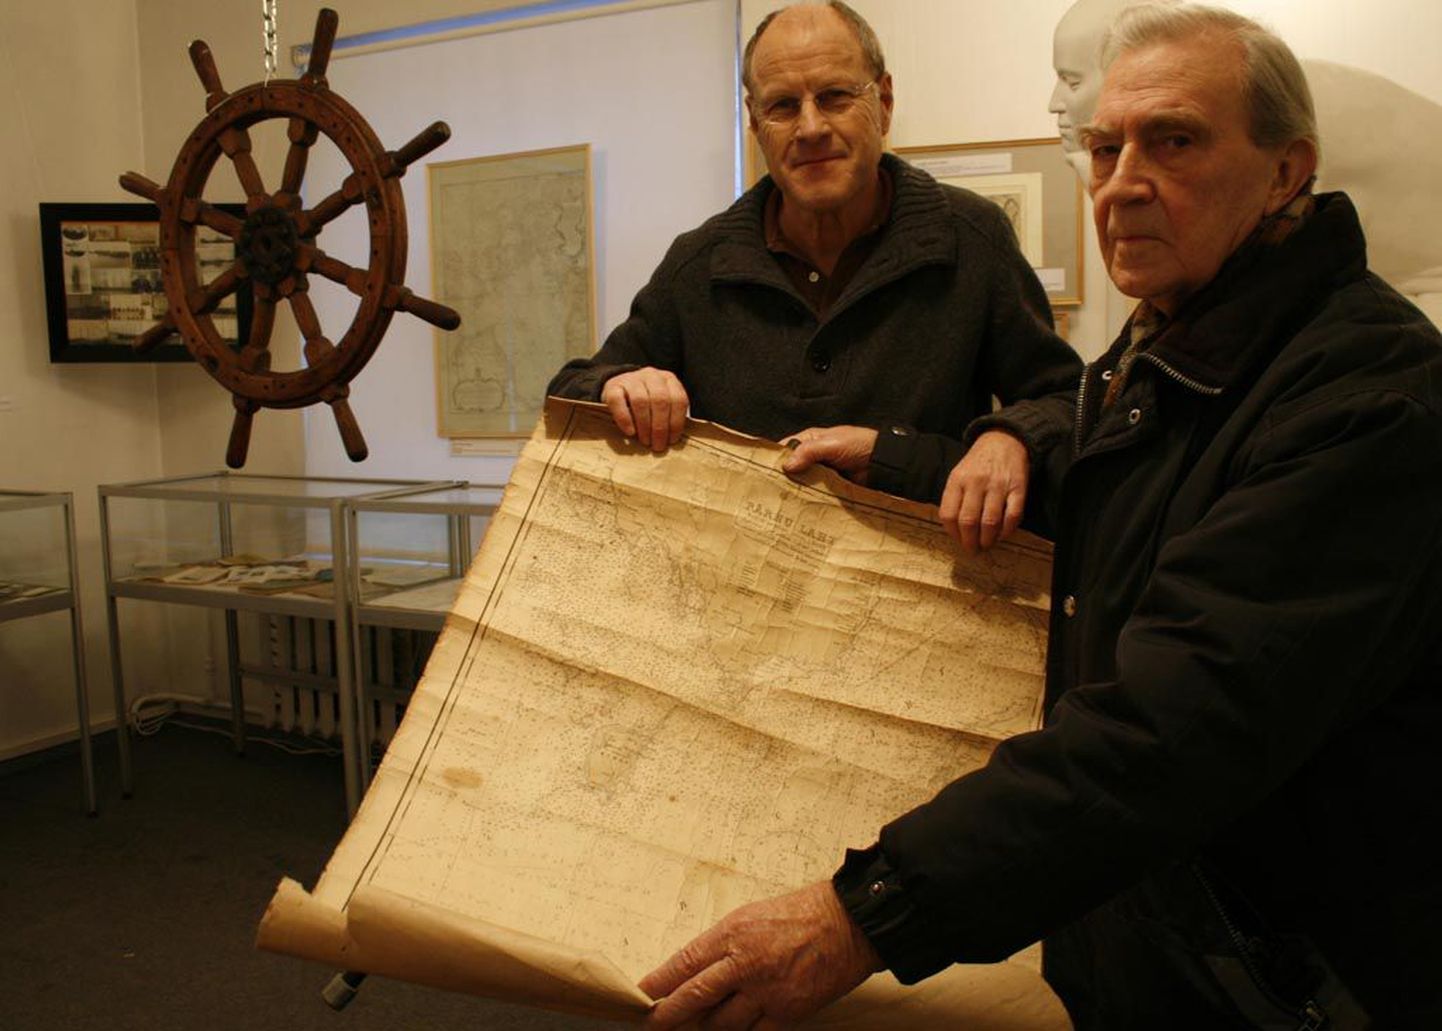 Kohtumisele kollektsionääriga võttis kunstnik Bruno Sõmeri kaasa vanaaegse Liivi lahe meresügavuste kaardi. “Kas müüd ära?” küsis Bergmann. “Ei müü,” vastas Sõmeri.